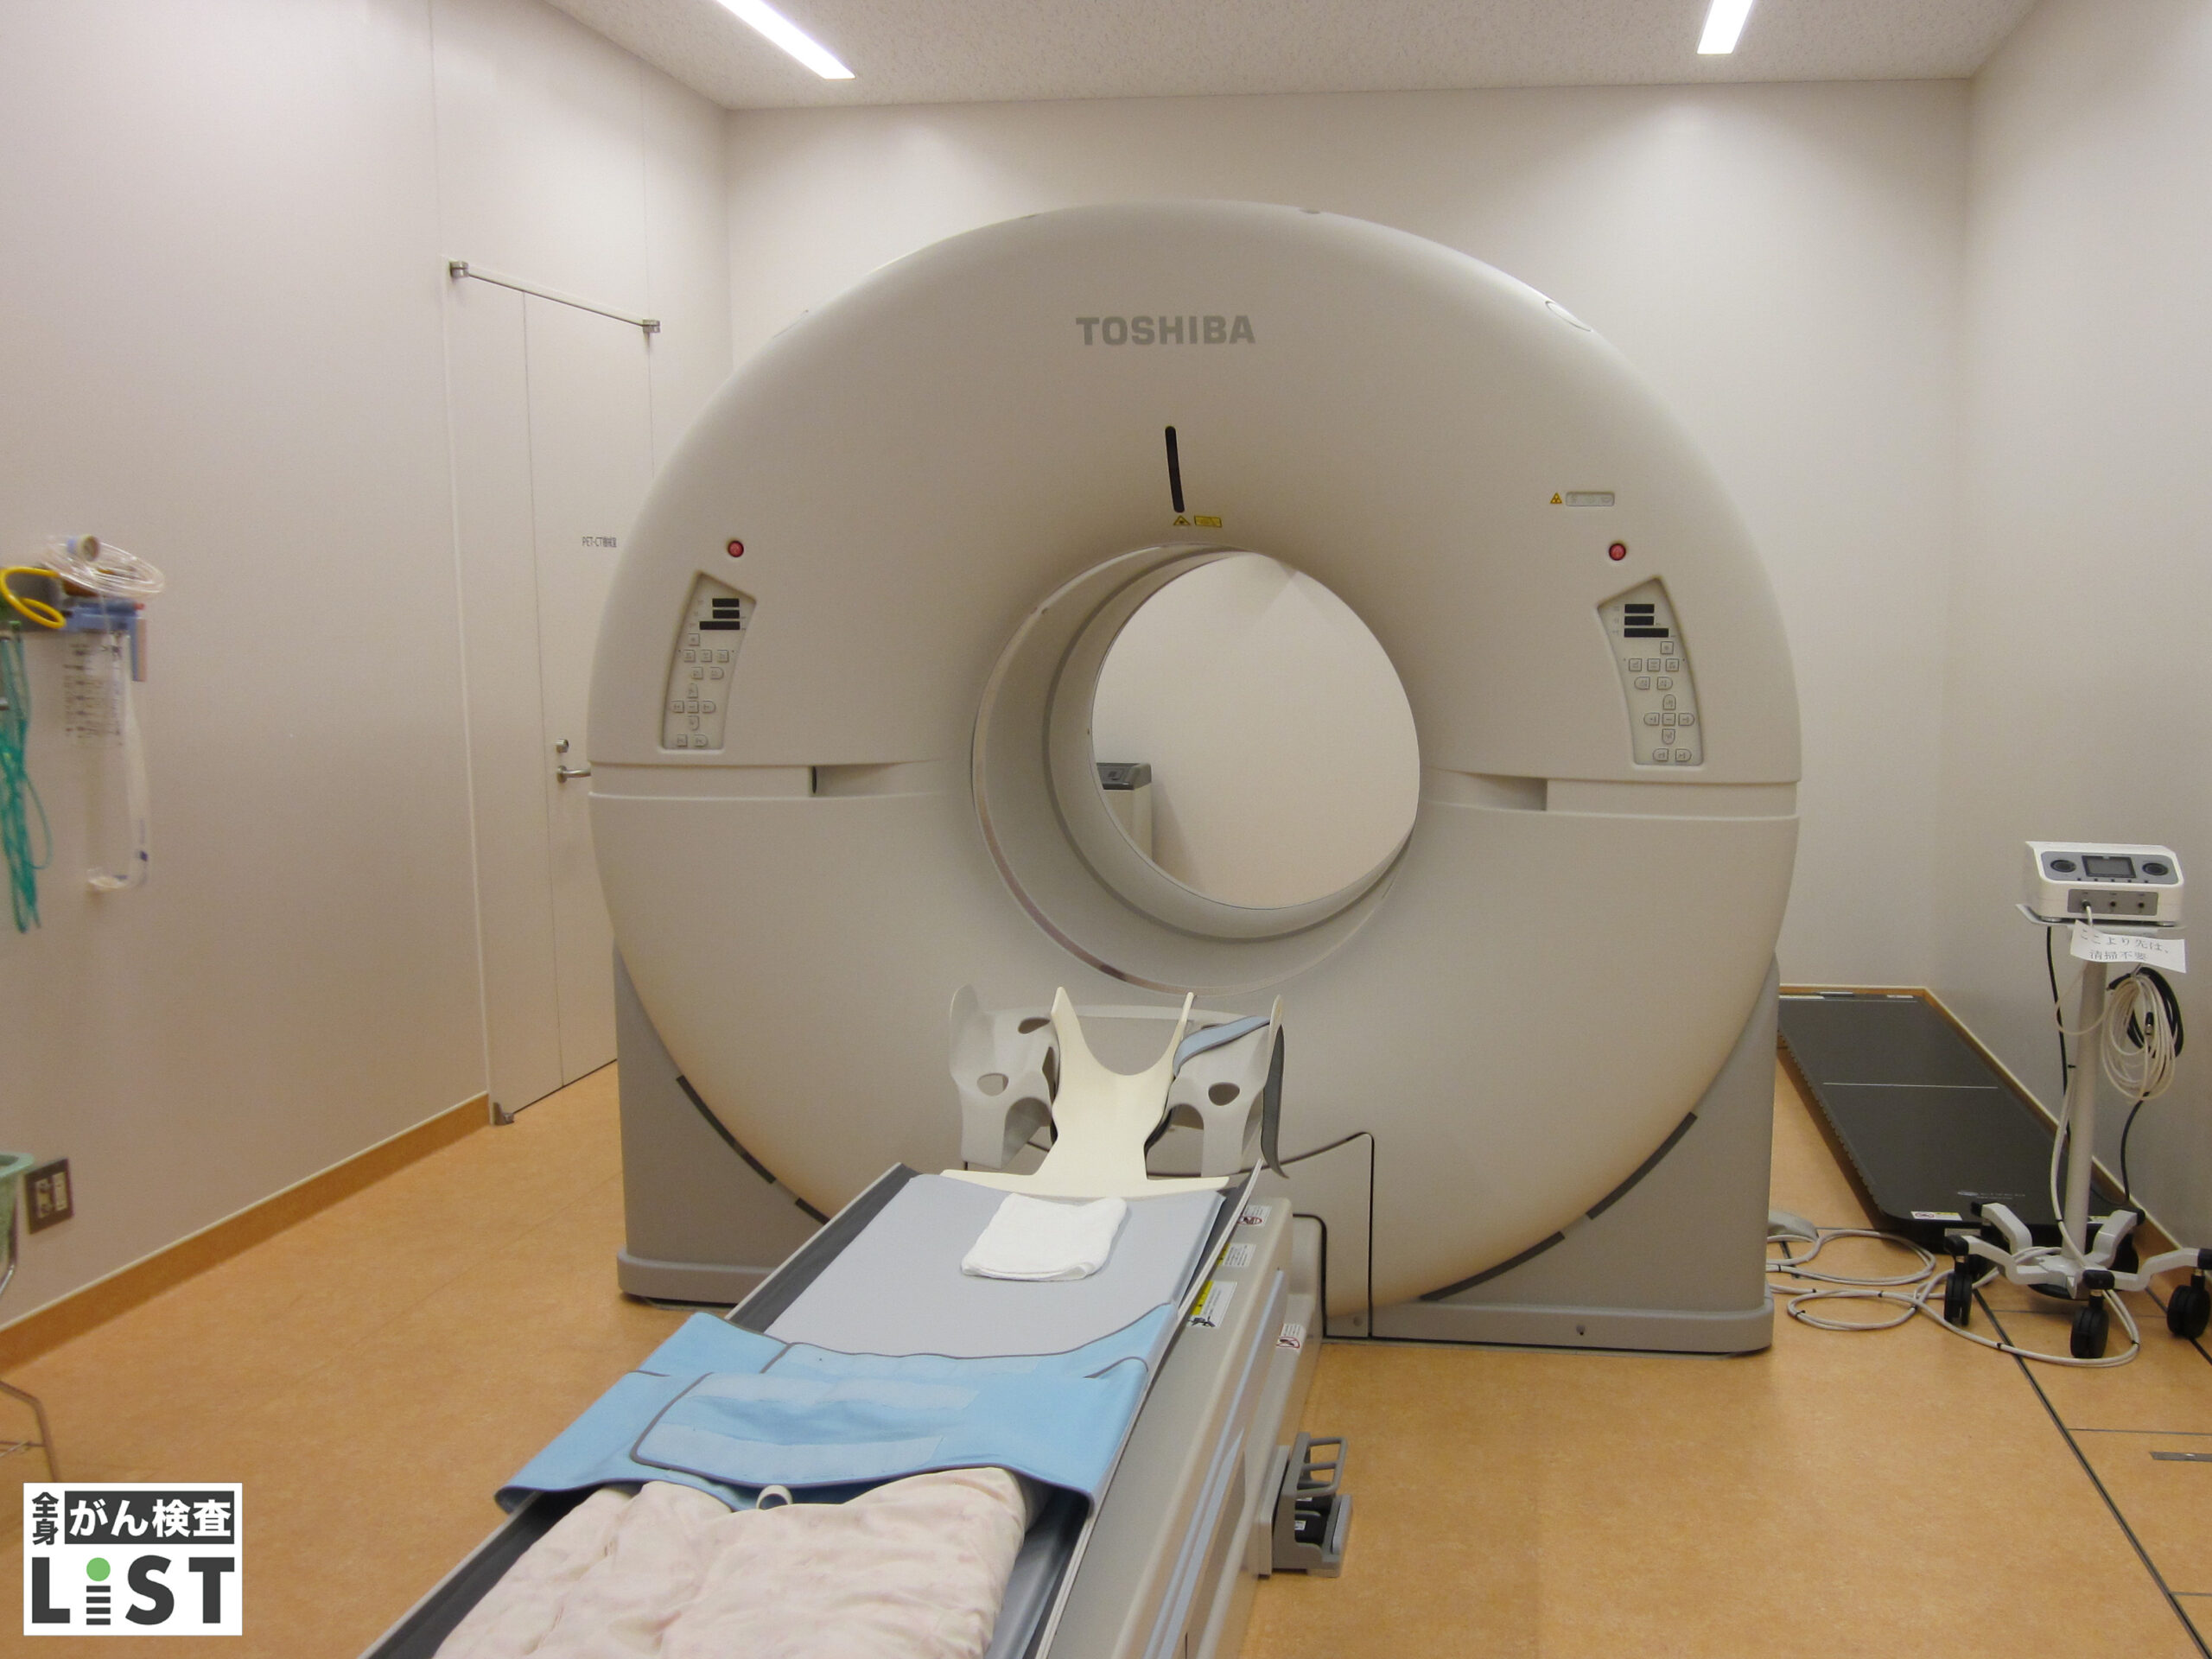 広範囲を一度に検査できるPET-CTで
がんをはじめとする疾患を早期発見へ